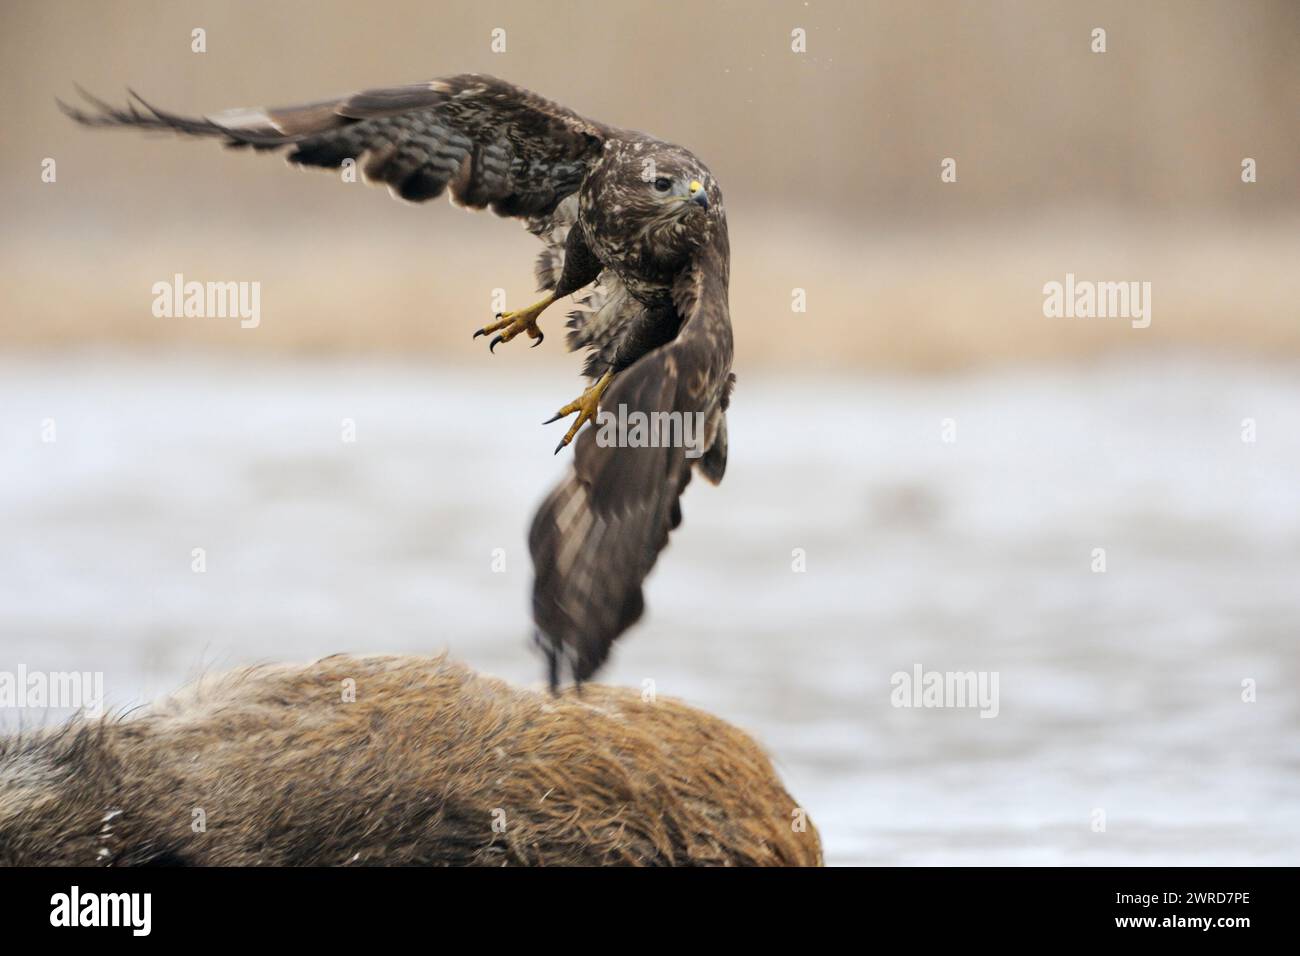 Buzzard comune / Buzzard ( Buteo buteo) decollo da una carcassa, dove si nutriva prima, fauna selvatica, Europa. Foto Stock